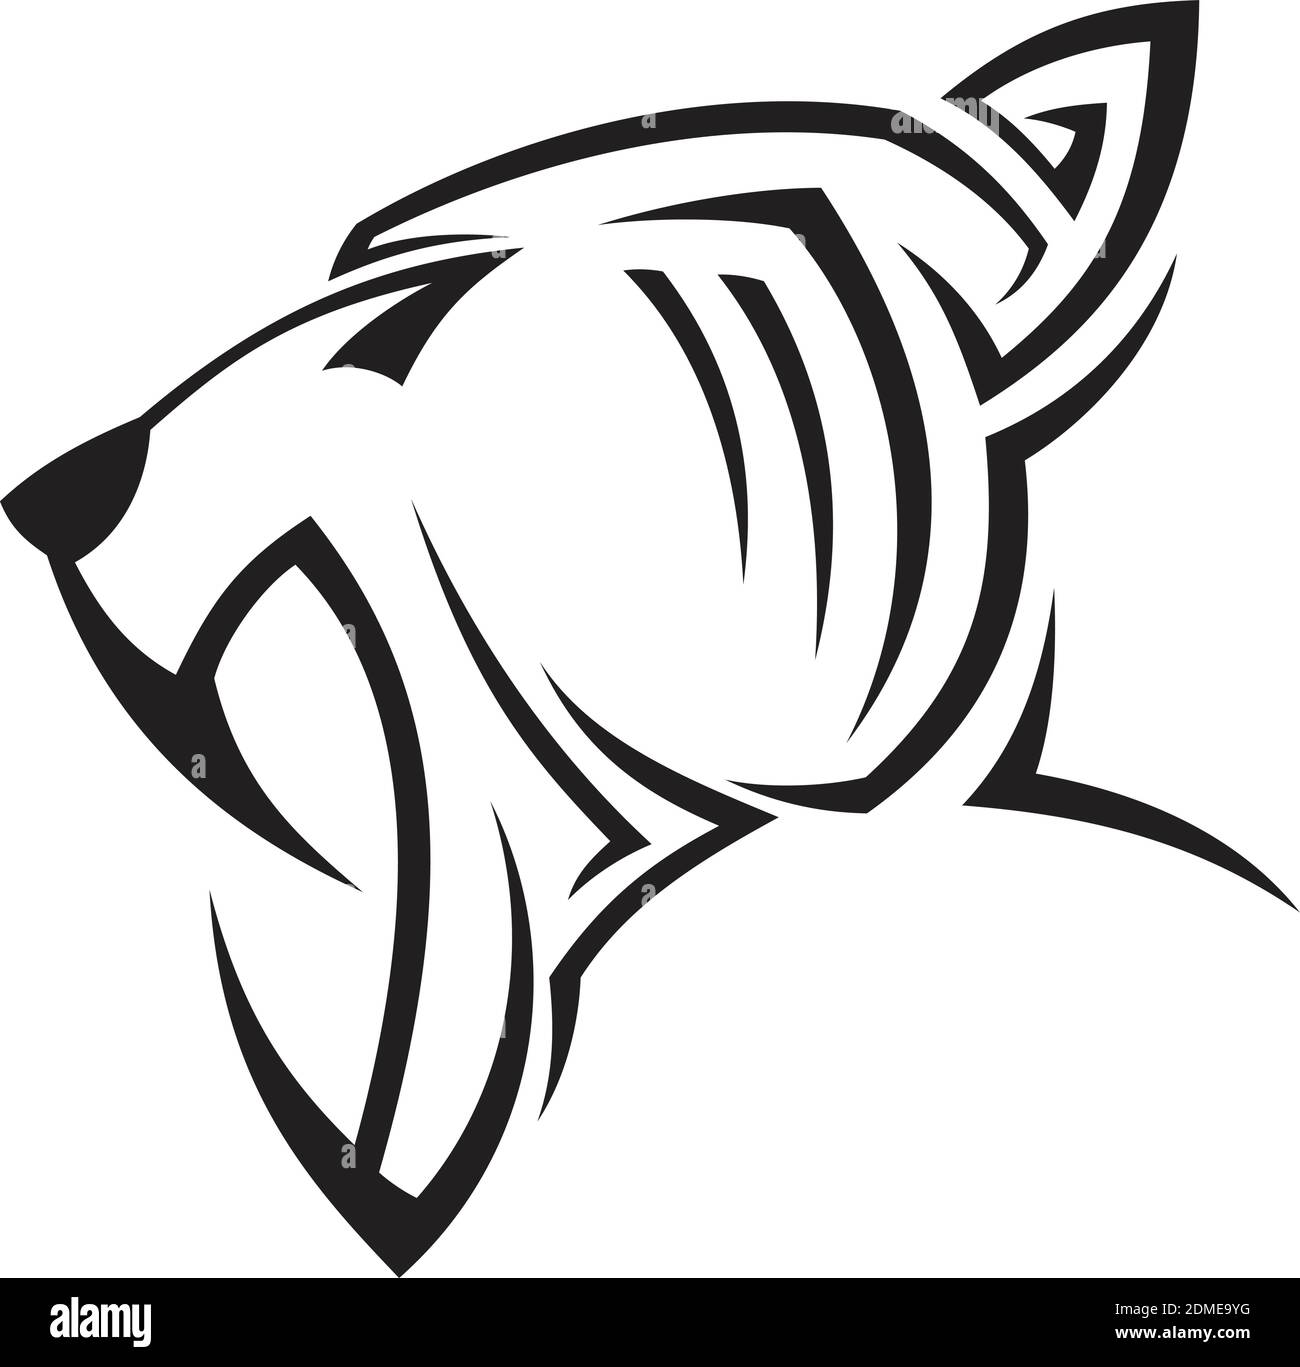 Kreative Silhouette Illustration Tribal Vektor Kopf Panther Design-Konzept. Einfache Tierwelt. Vektorgrafik EPS.8 EPS.10 Stock Vektor